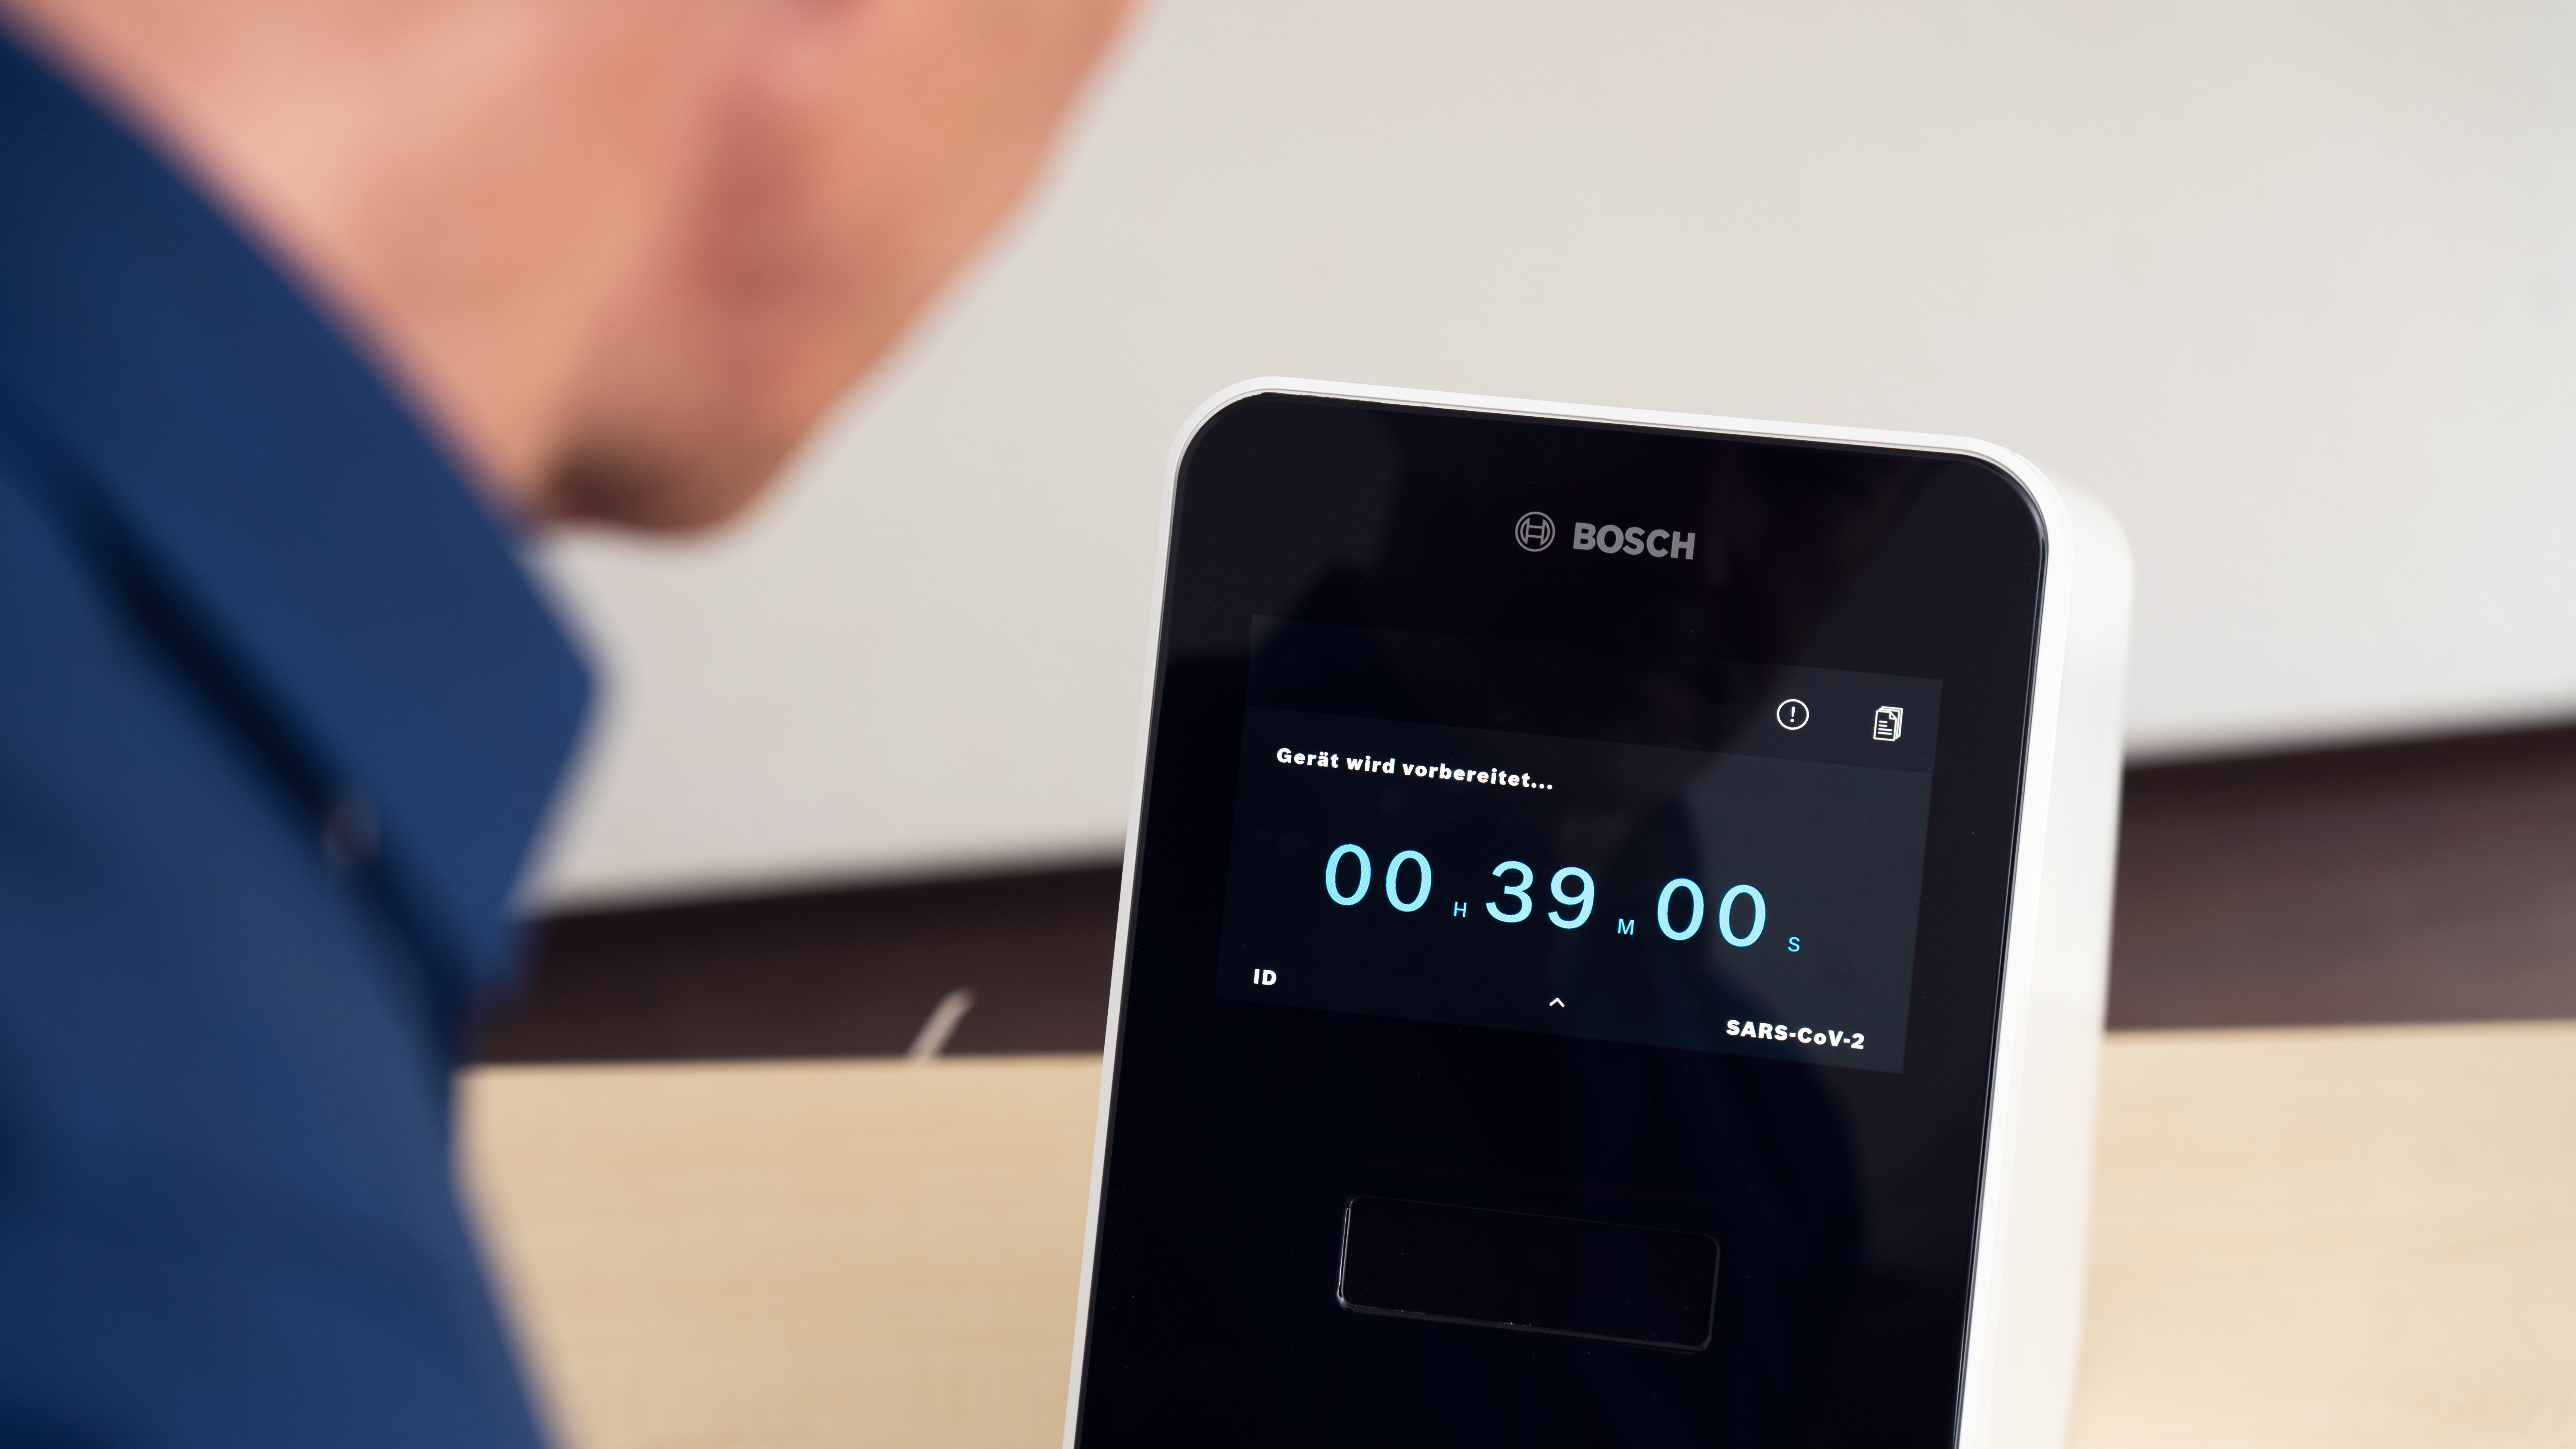 Noul test rapid Bosch pentru coronavirus oferă rezultate fiabile în 39 de minute